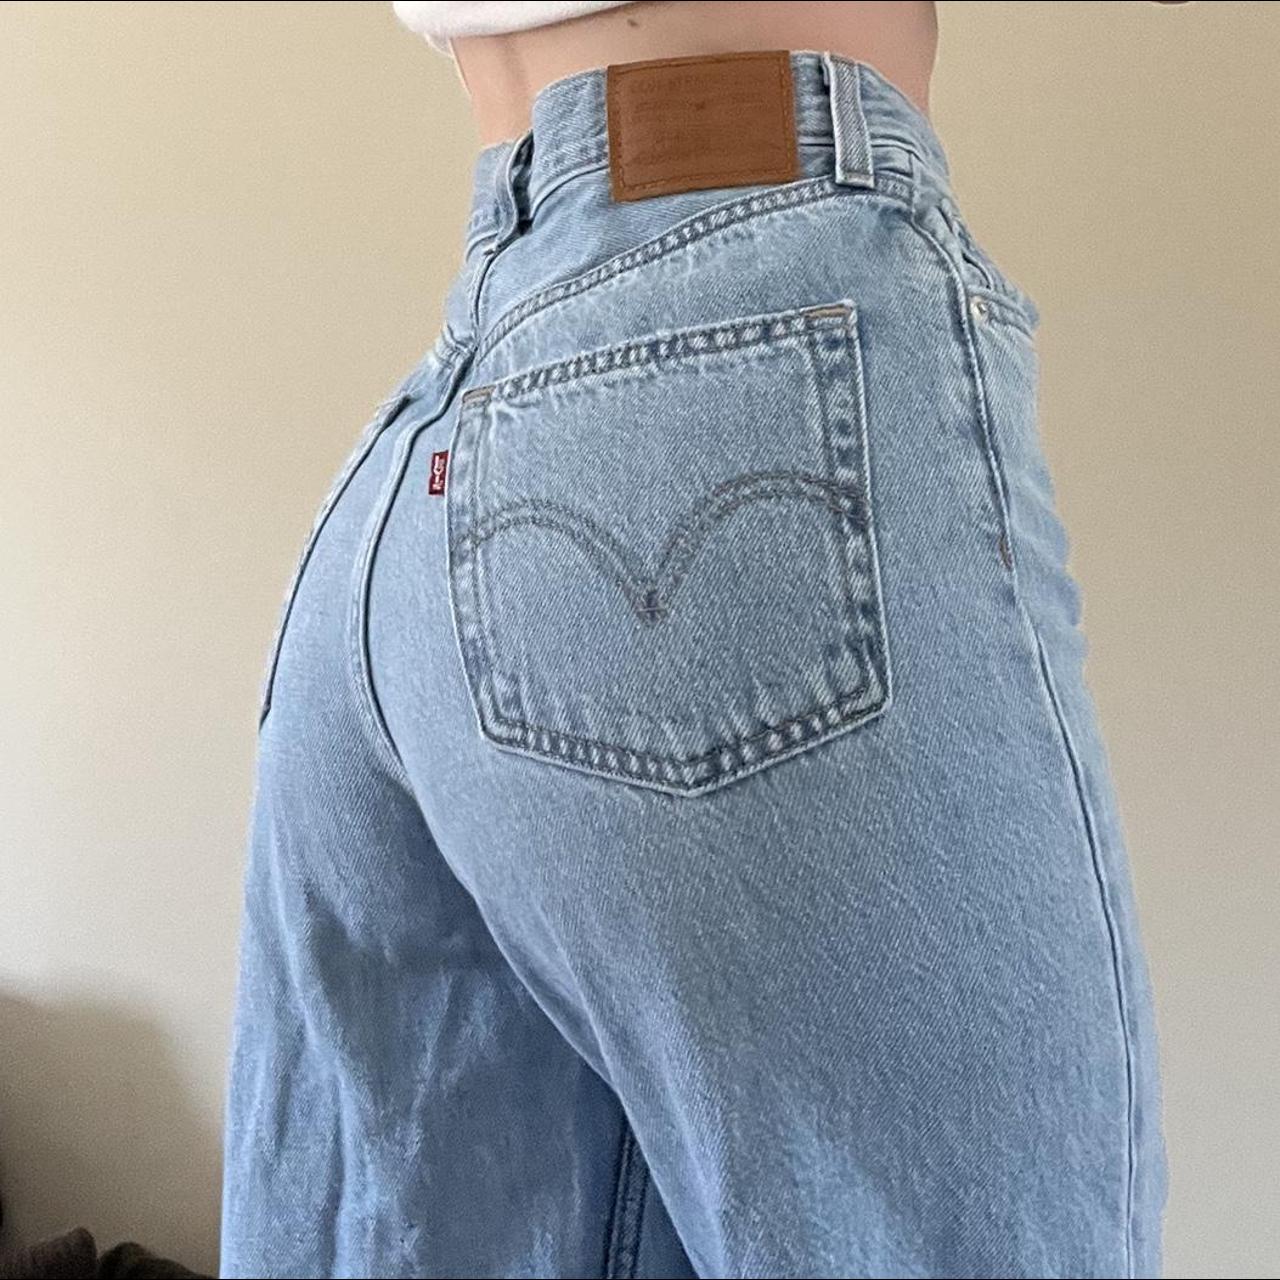 Brandy Melville Women's Jeans